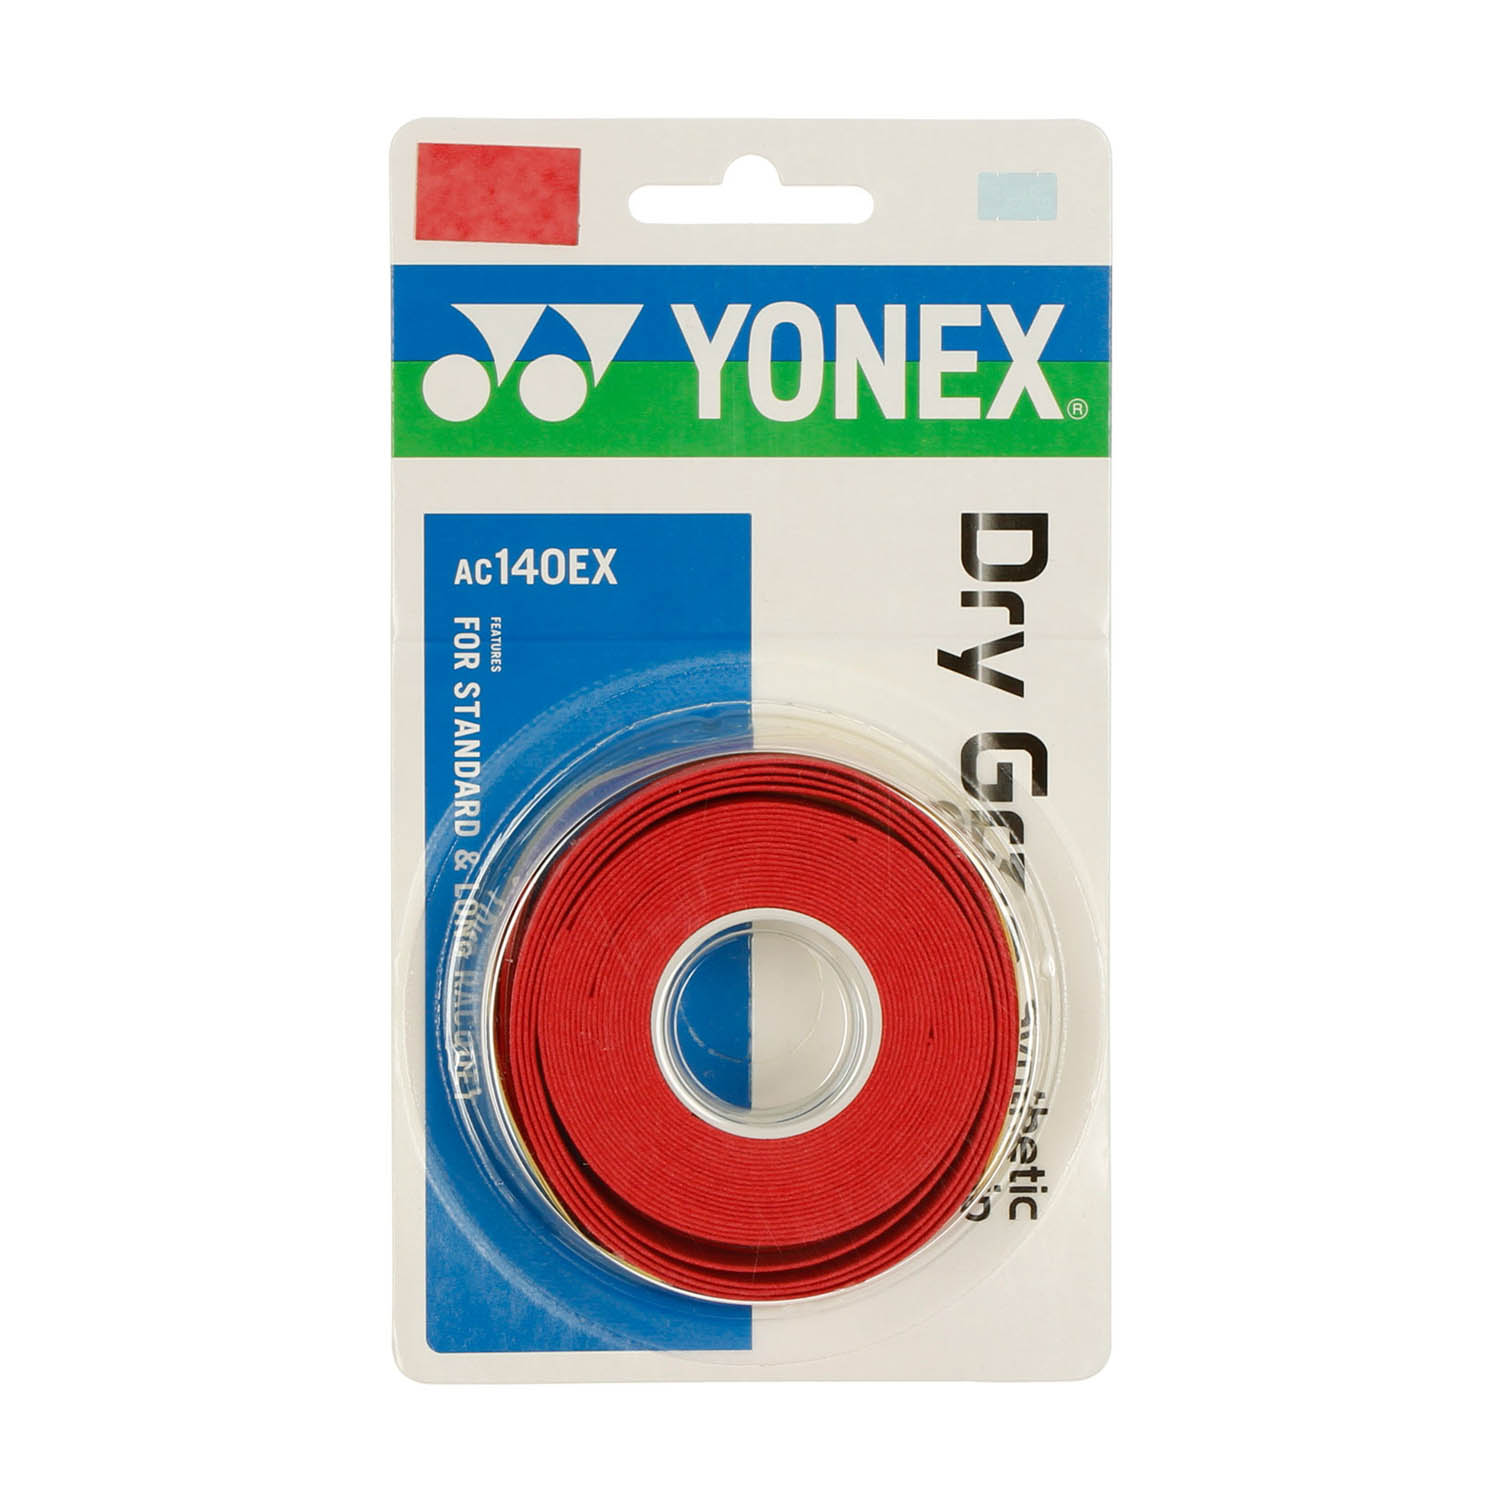 Yonex Dry Grap Overgrip x 3 - Rosso Corallo